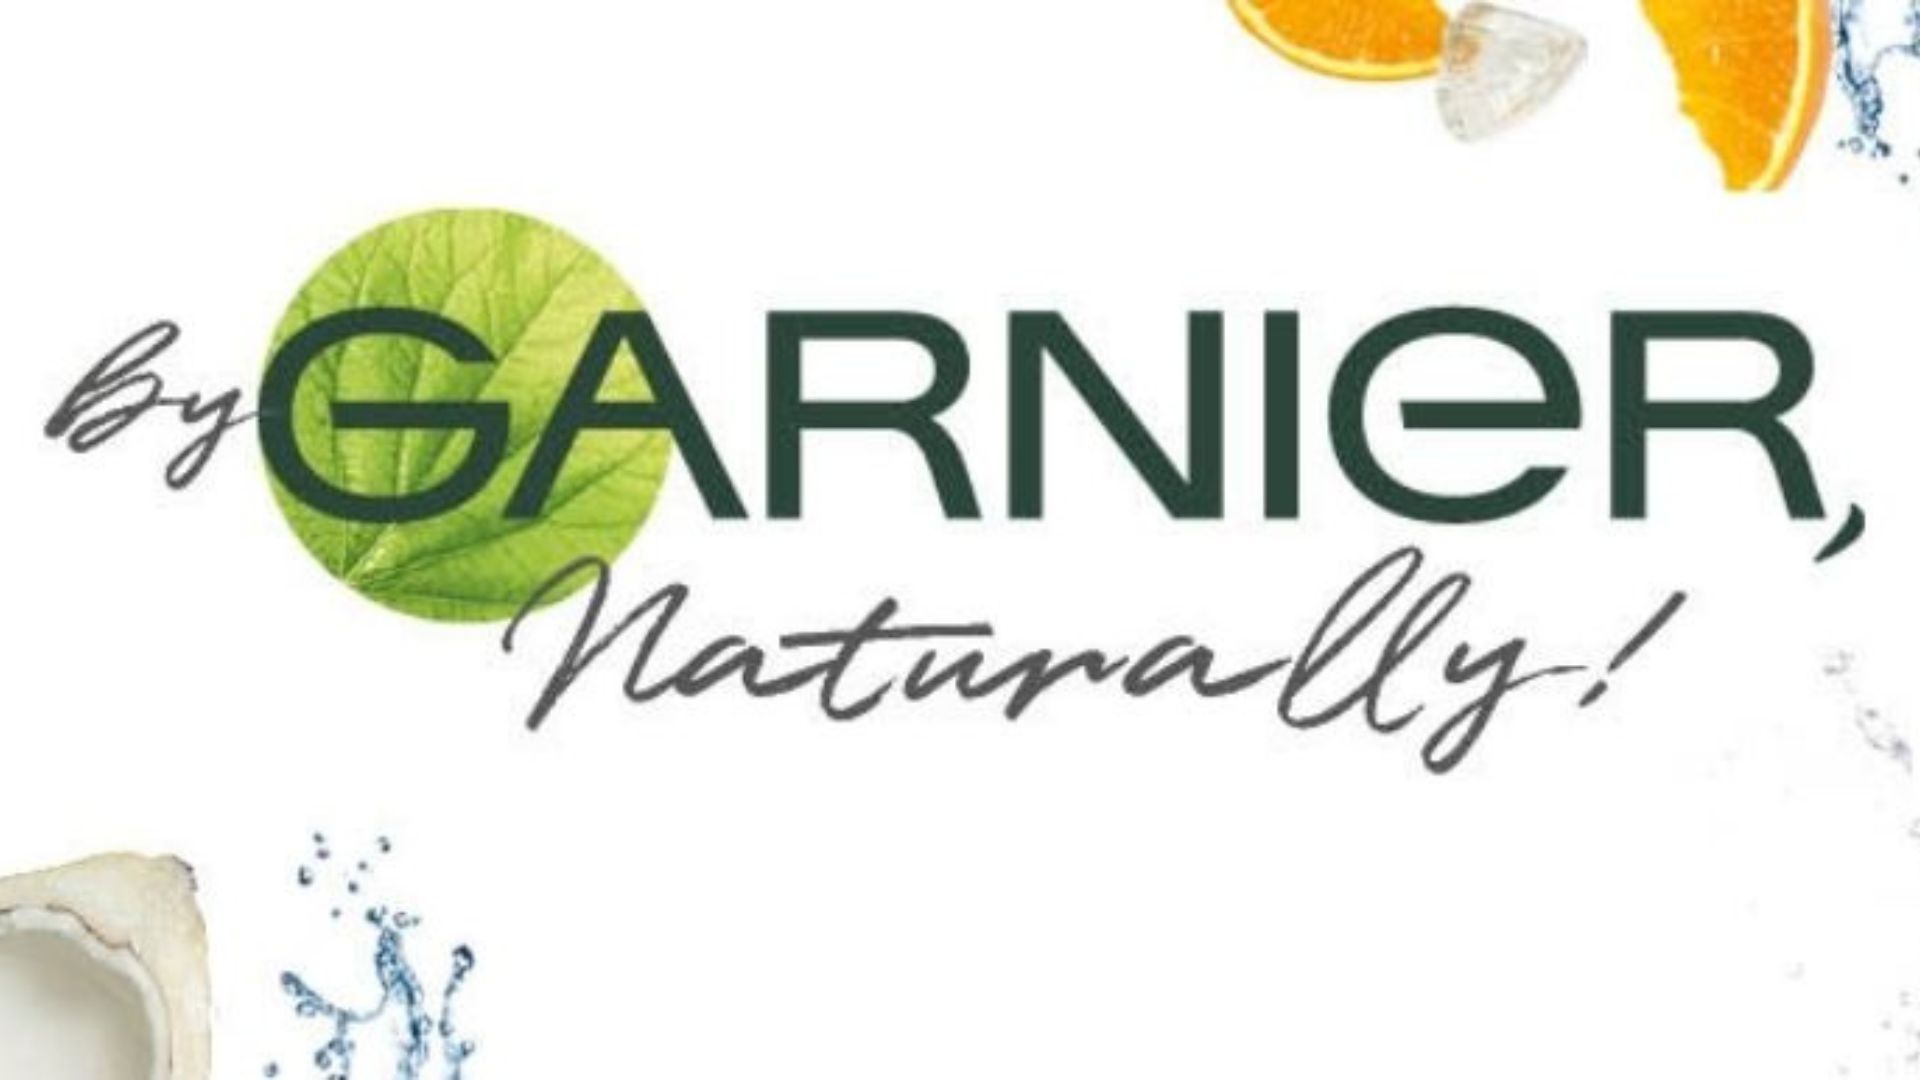 Garnier là một thương hiệu làm đẹp từ thiên nhiên số 1 trên toàn thế giới (Nguồn: Internet)